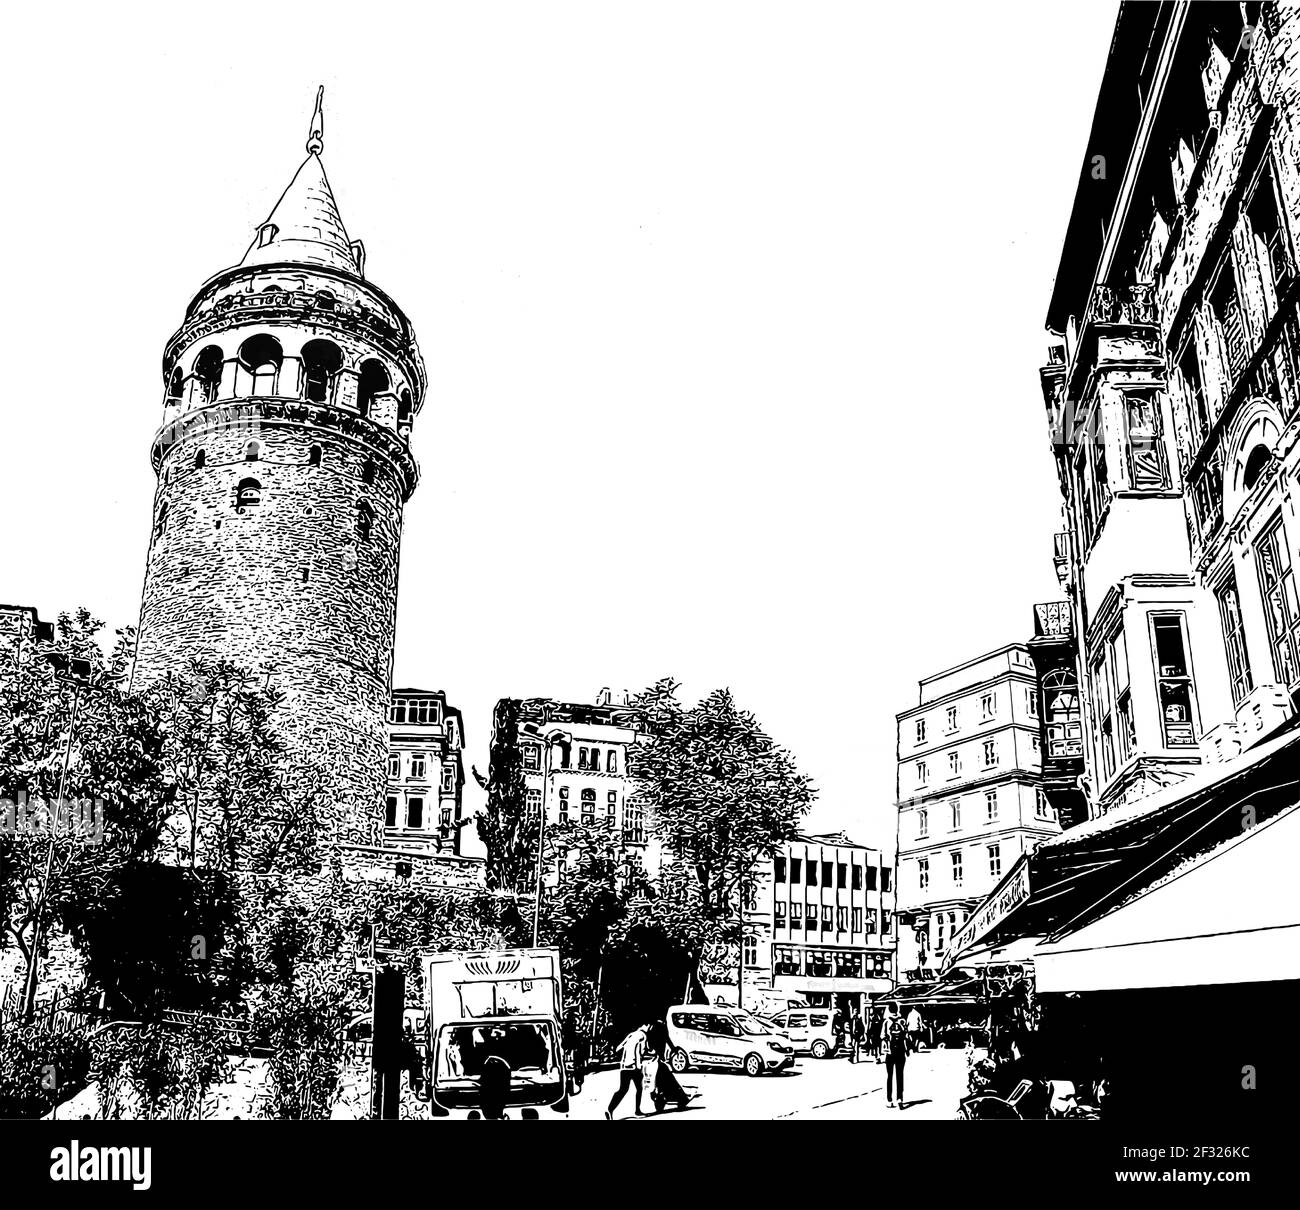 Galata Turm von yuksek kaldirim Region Hügel. Karakoy der moderne Name für das alte Galata ist ein kommerzielles Viertel zum Beyoglu Viertel Stock Vektor